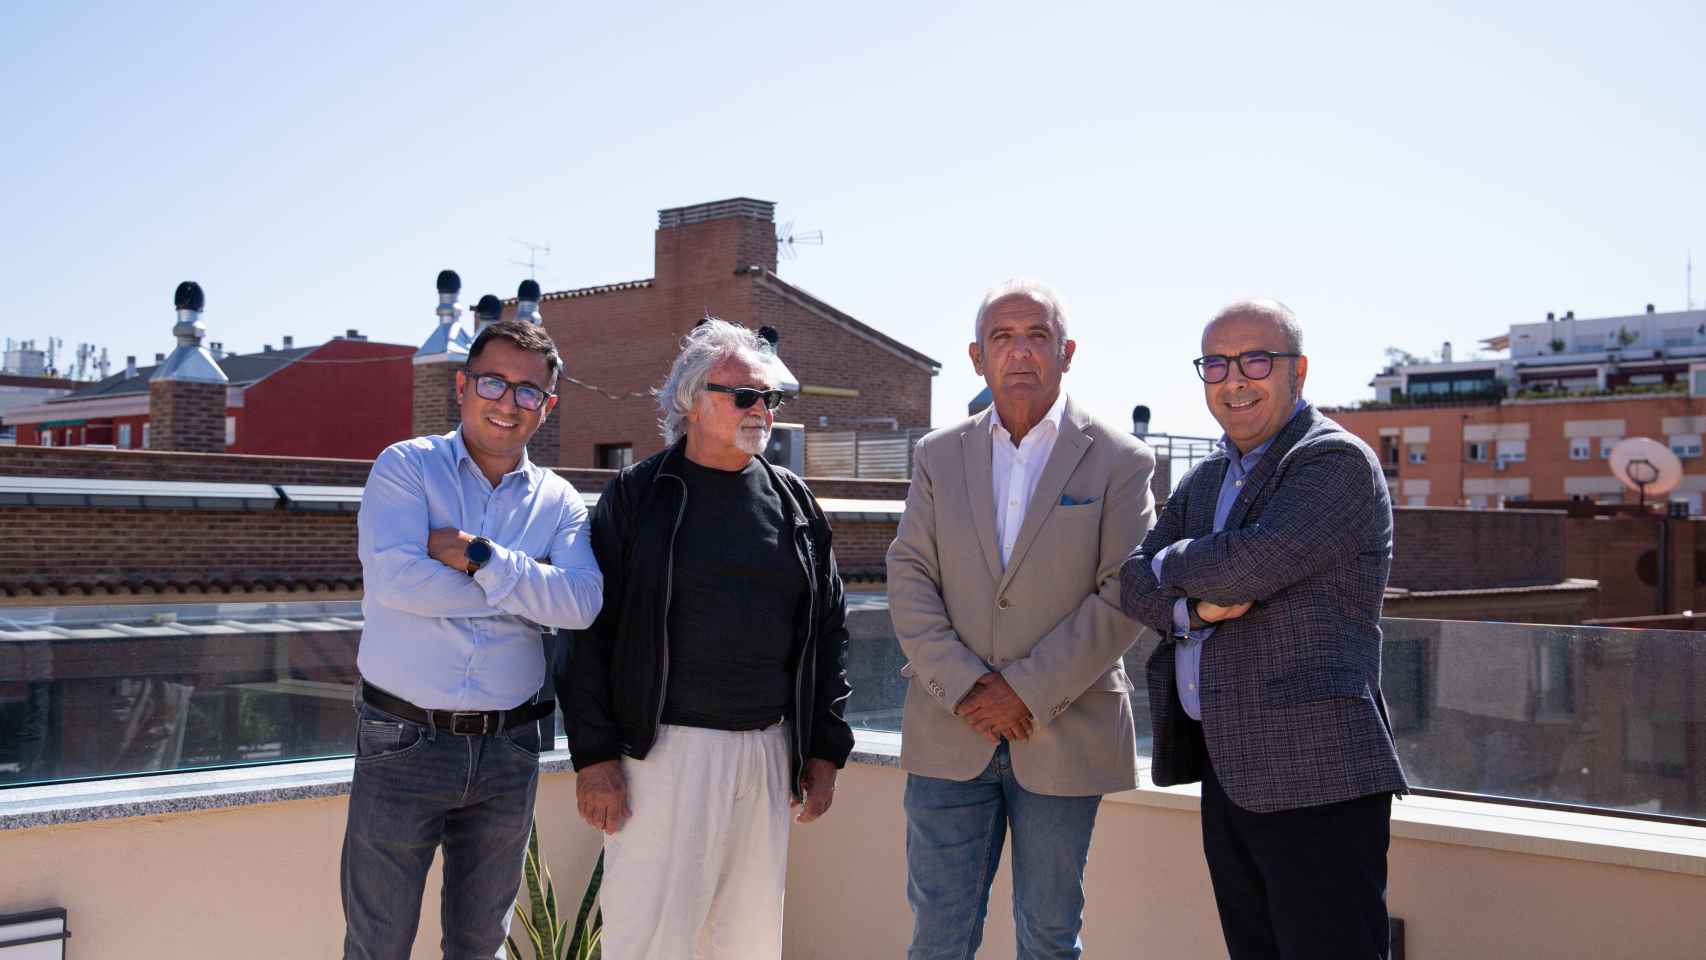 De izquierda a derecha: Henry Ramiro, de Hinforcom e Indomotiv; el arquitecto Miguel Ángel Verdaguer; y Enrique Fernández y Raúl García, de Nice Automatismos.